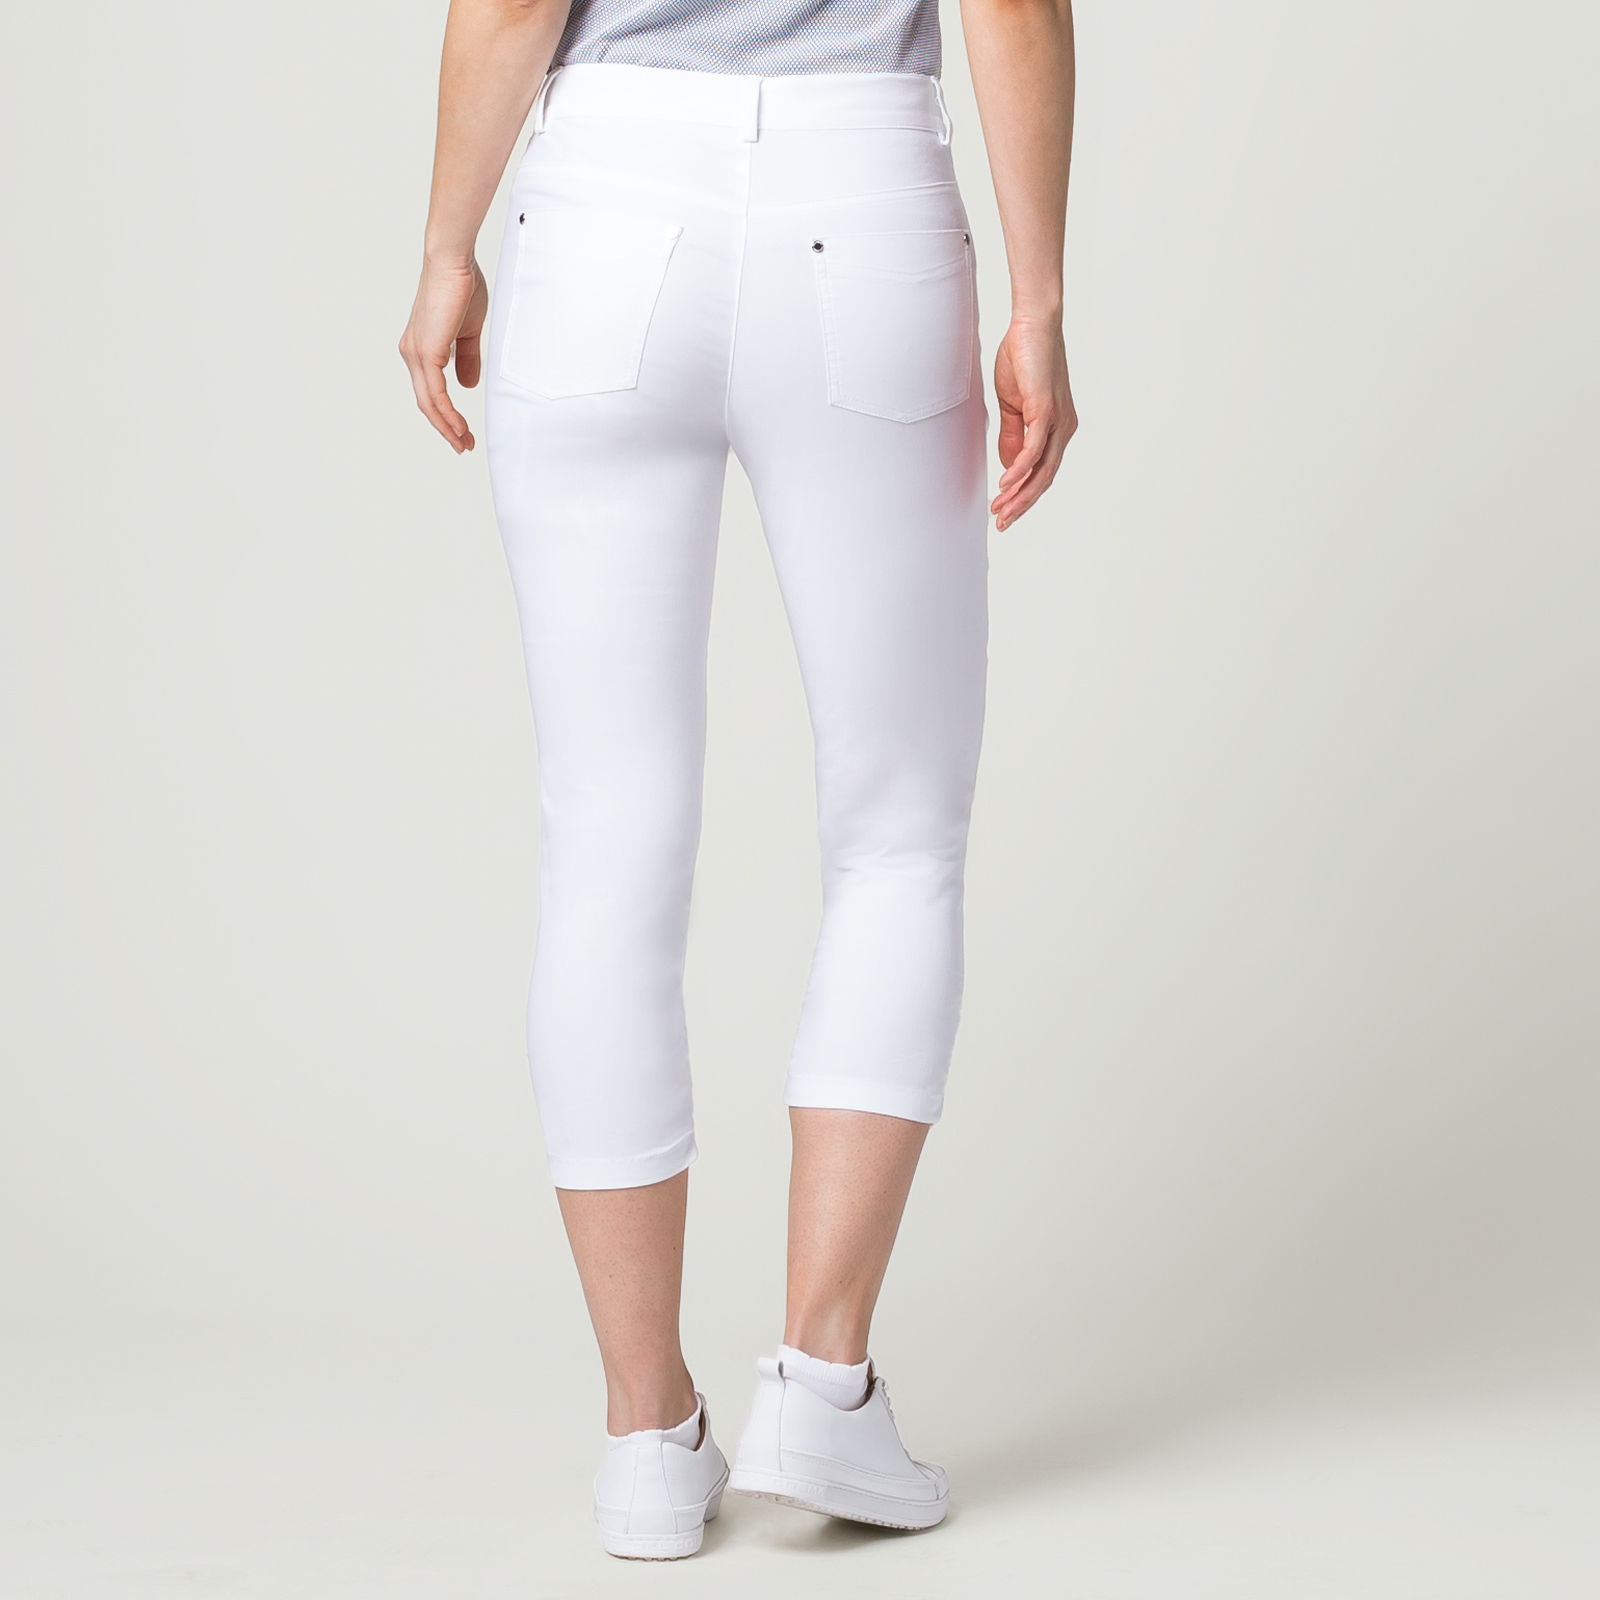 Pantalon corsaire pour femme en tissu Stretch déperlant anti-UV